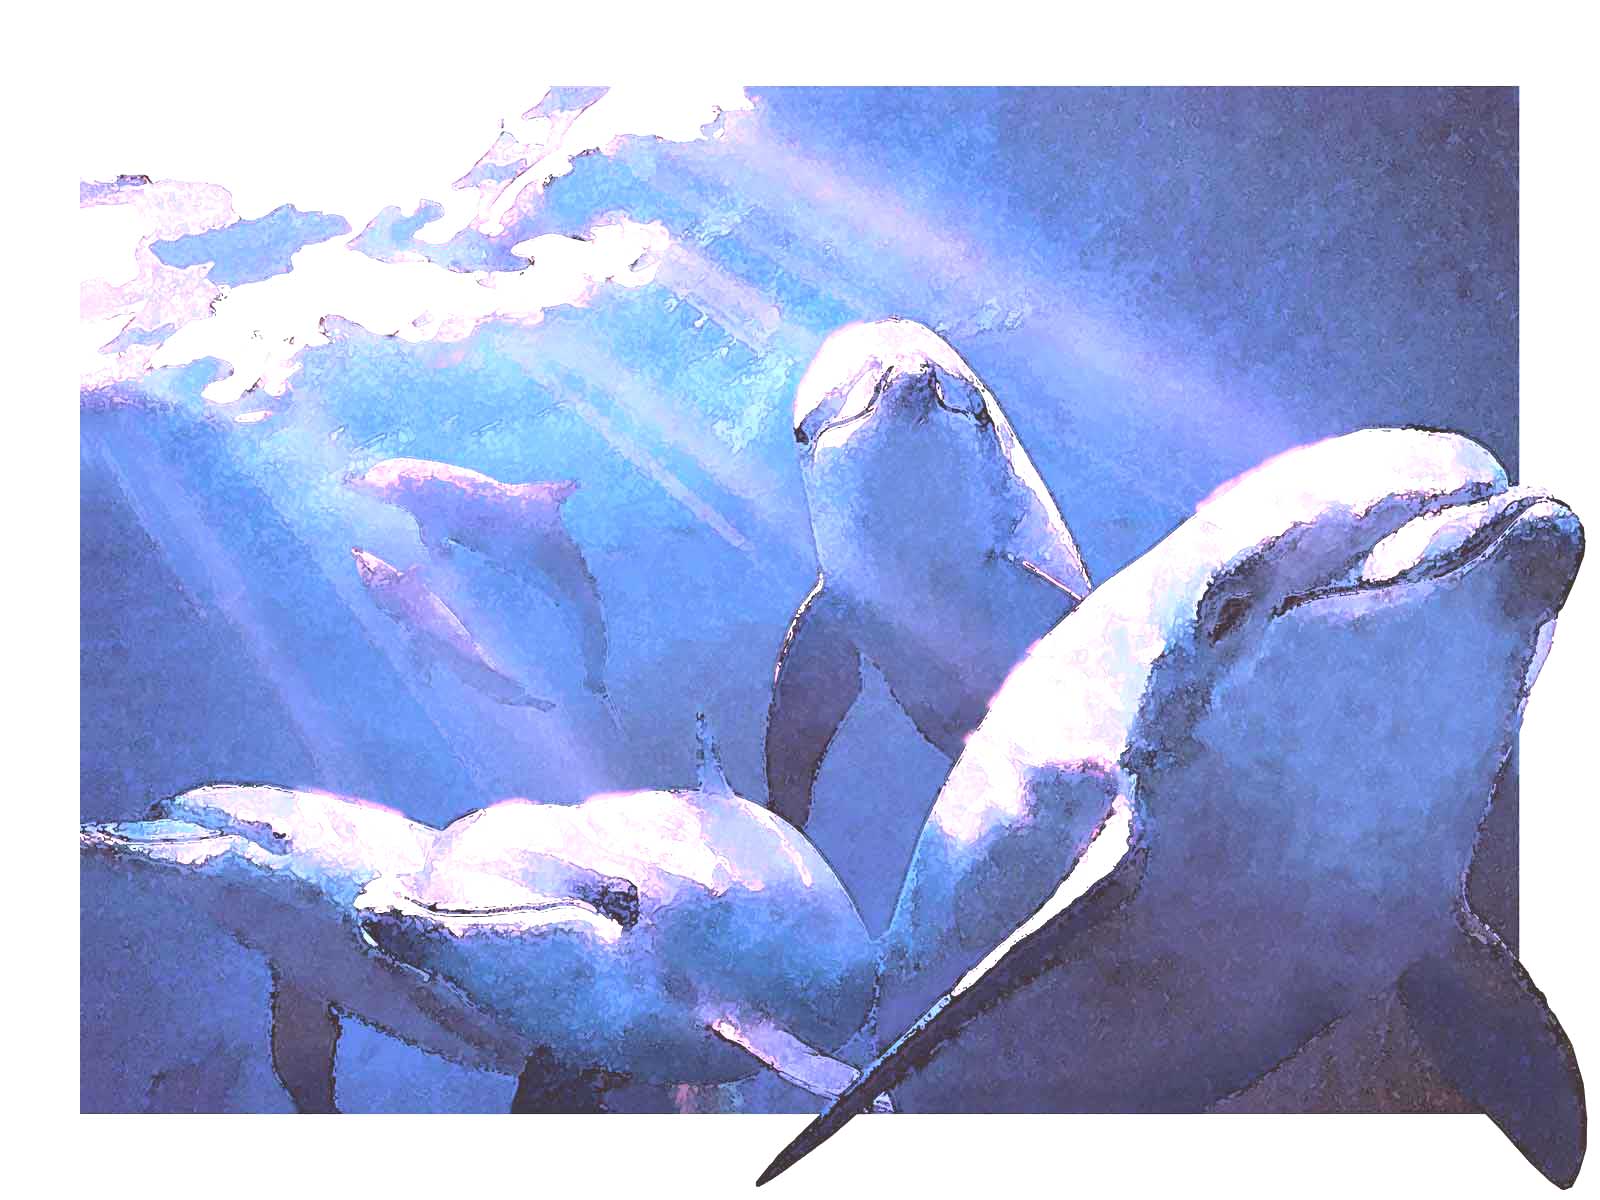 イルカ 海豚 の壁紙 ポストカード用イラスト フリー素材集 壁紙tank